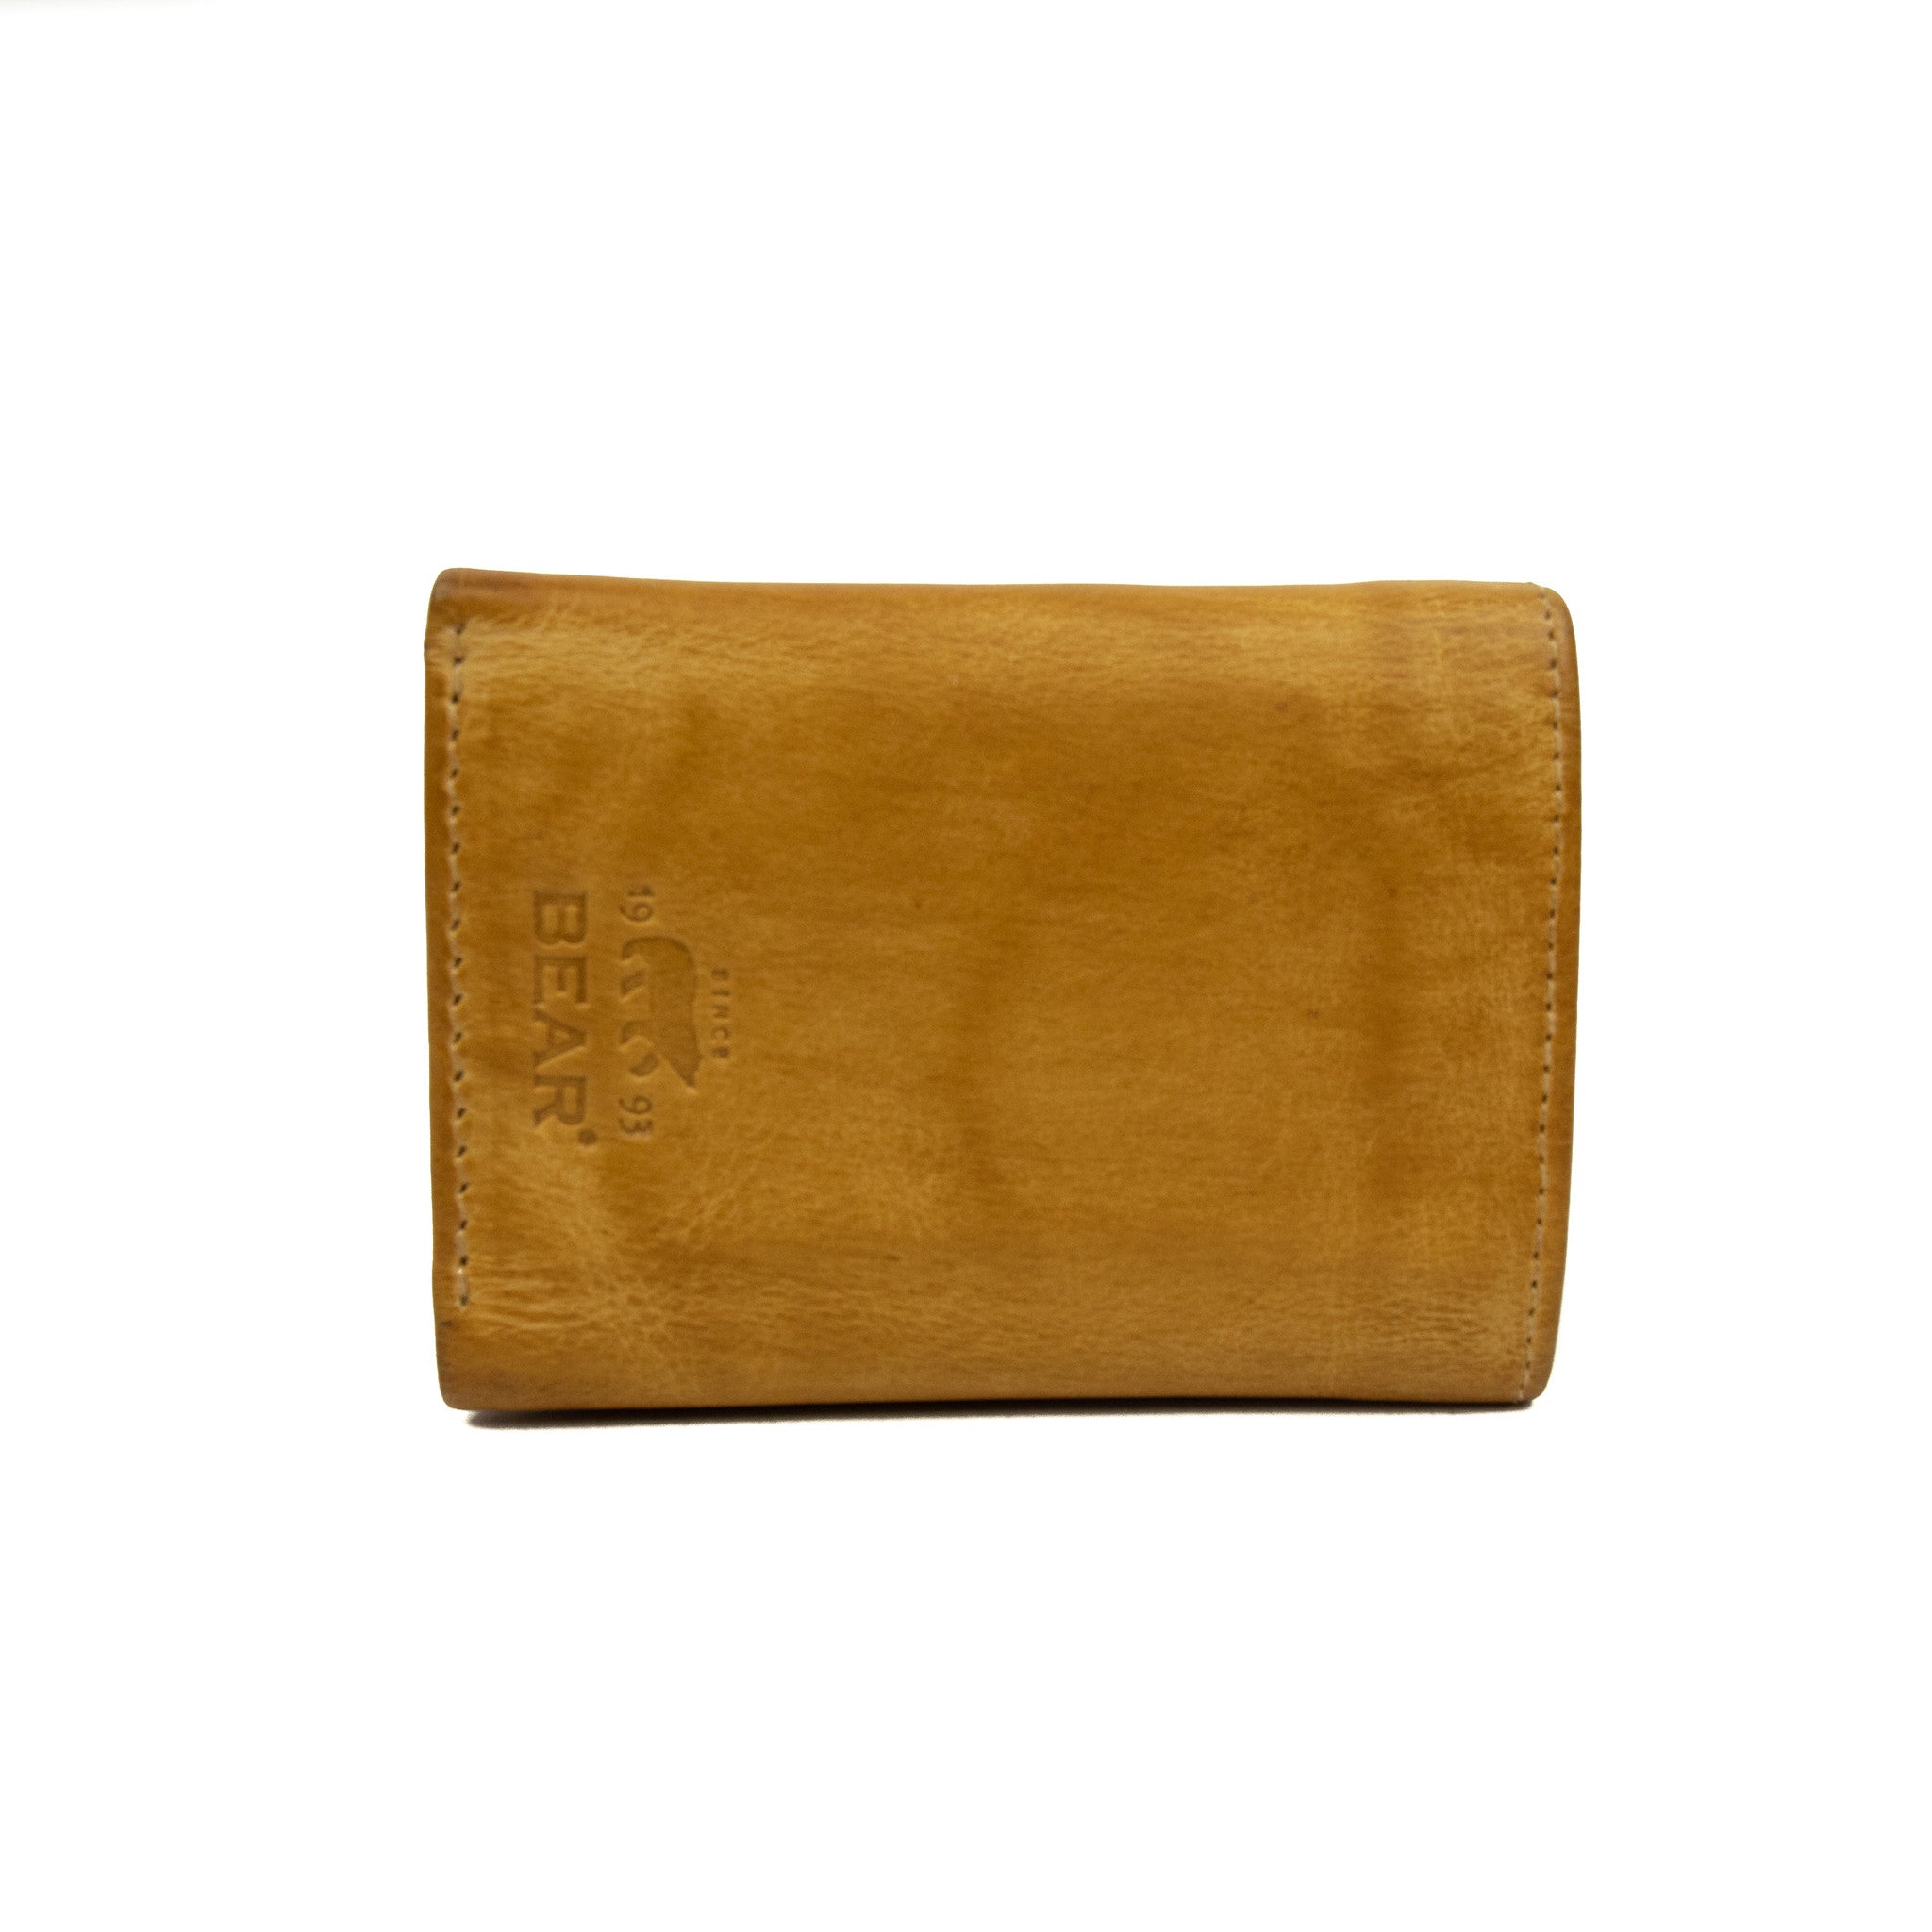 Wallet 'Nana' yellow - CP 4102